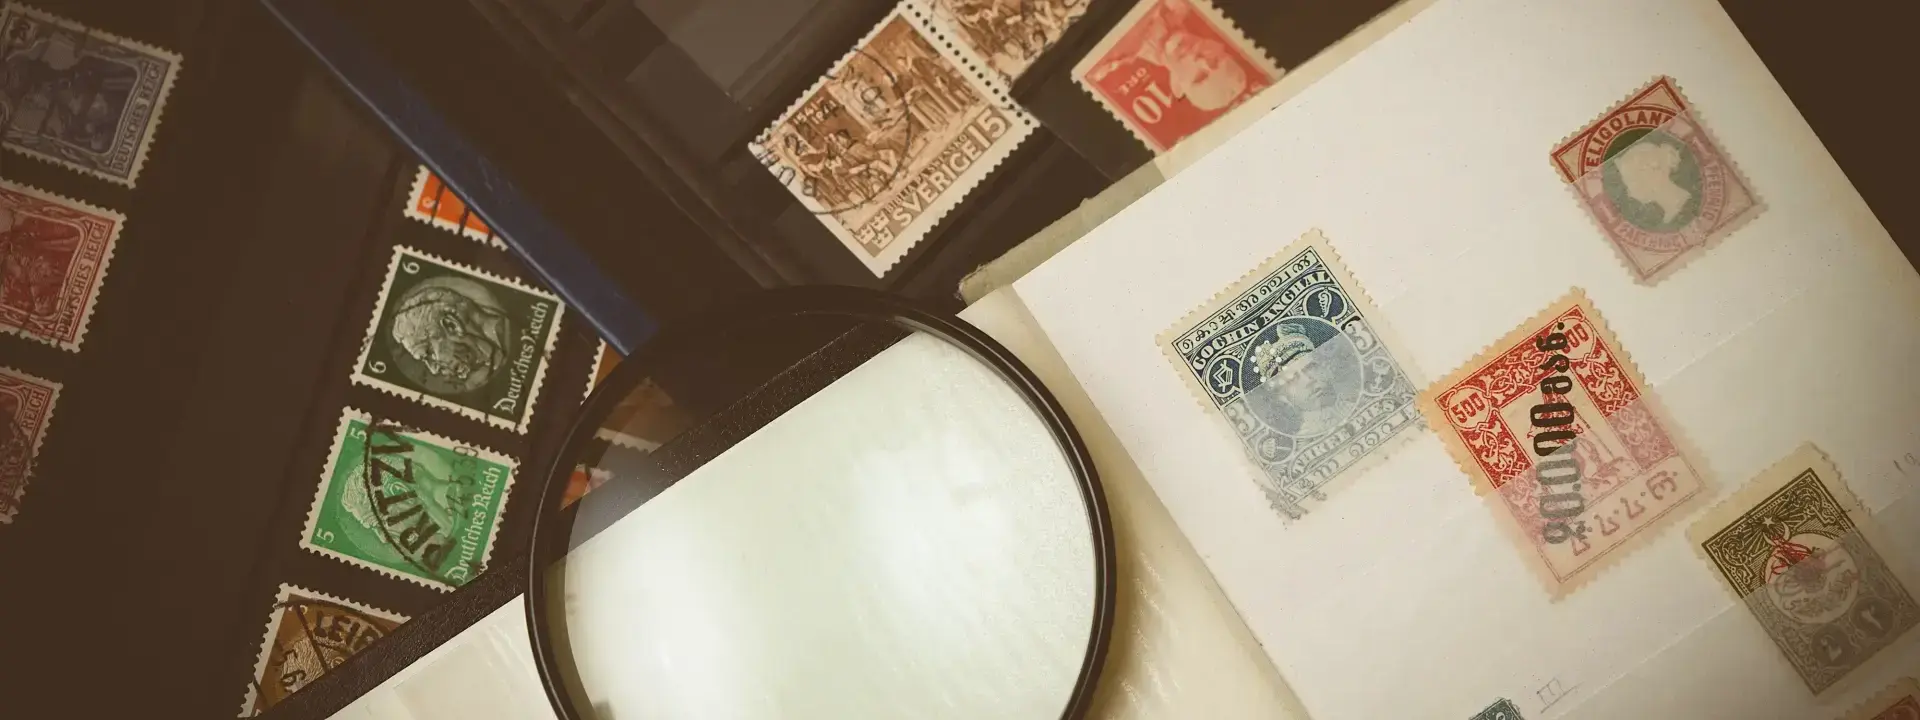 Stamp Creator Staff in Austria